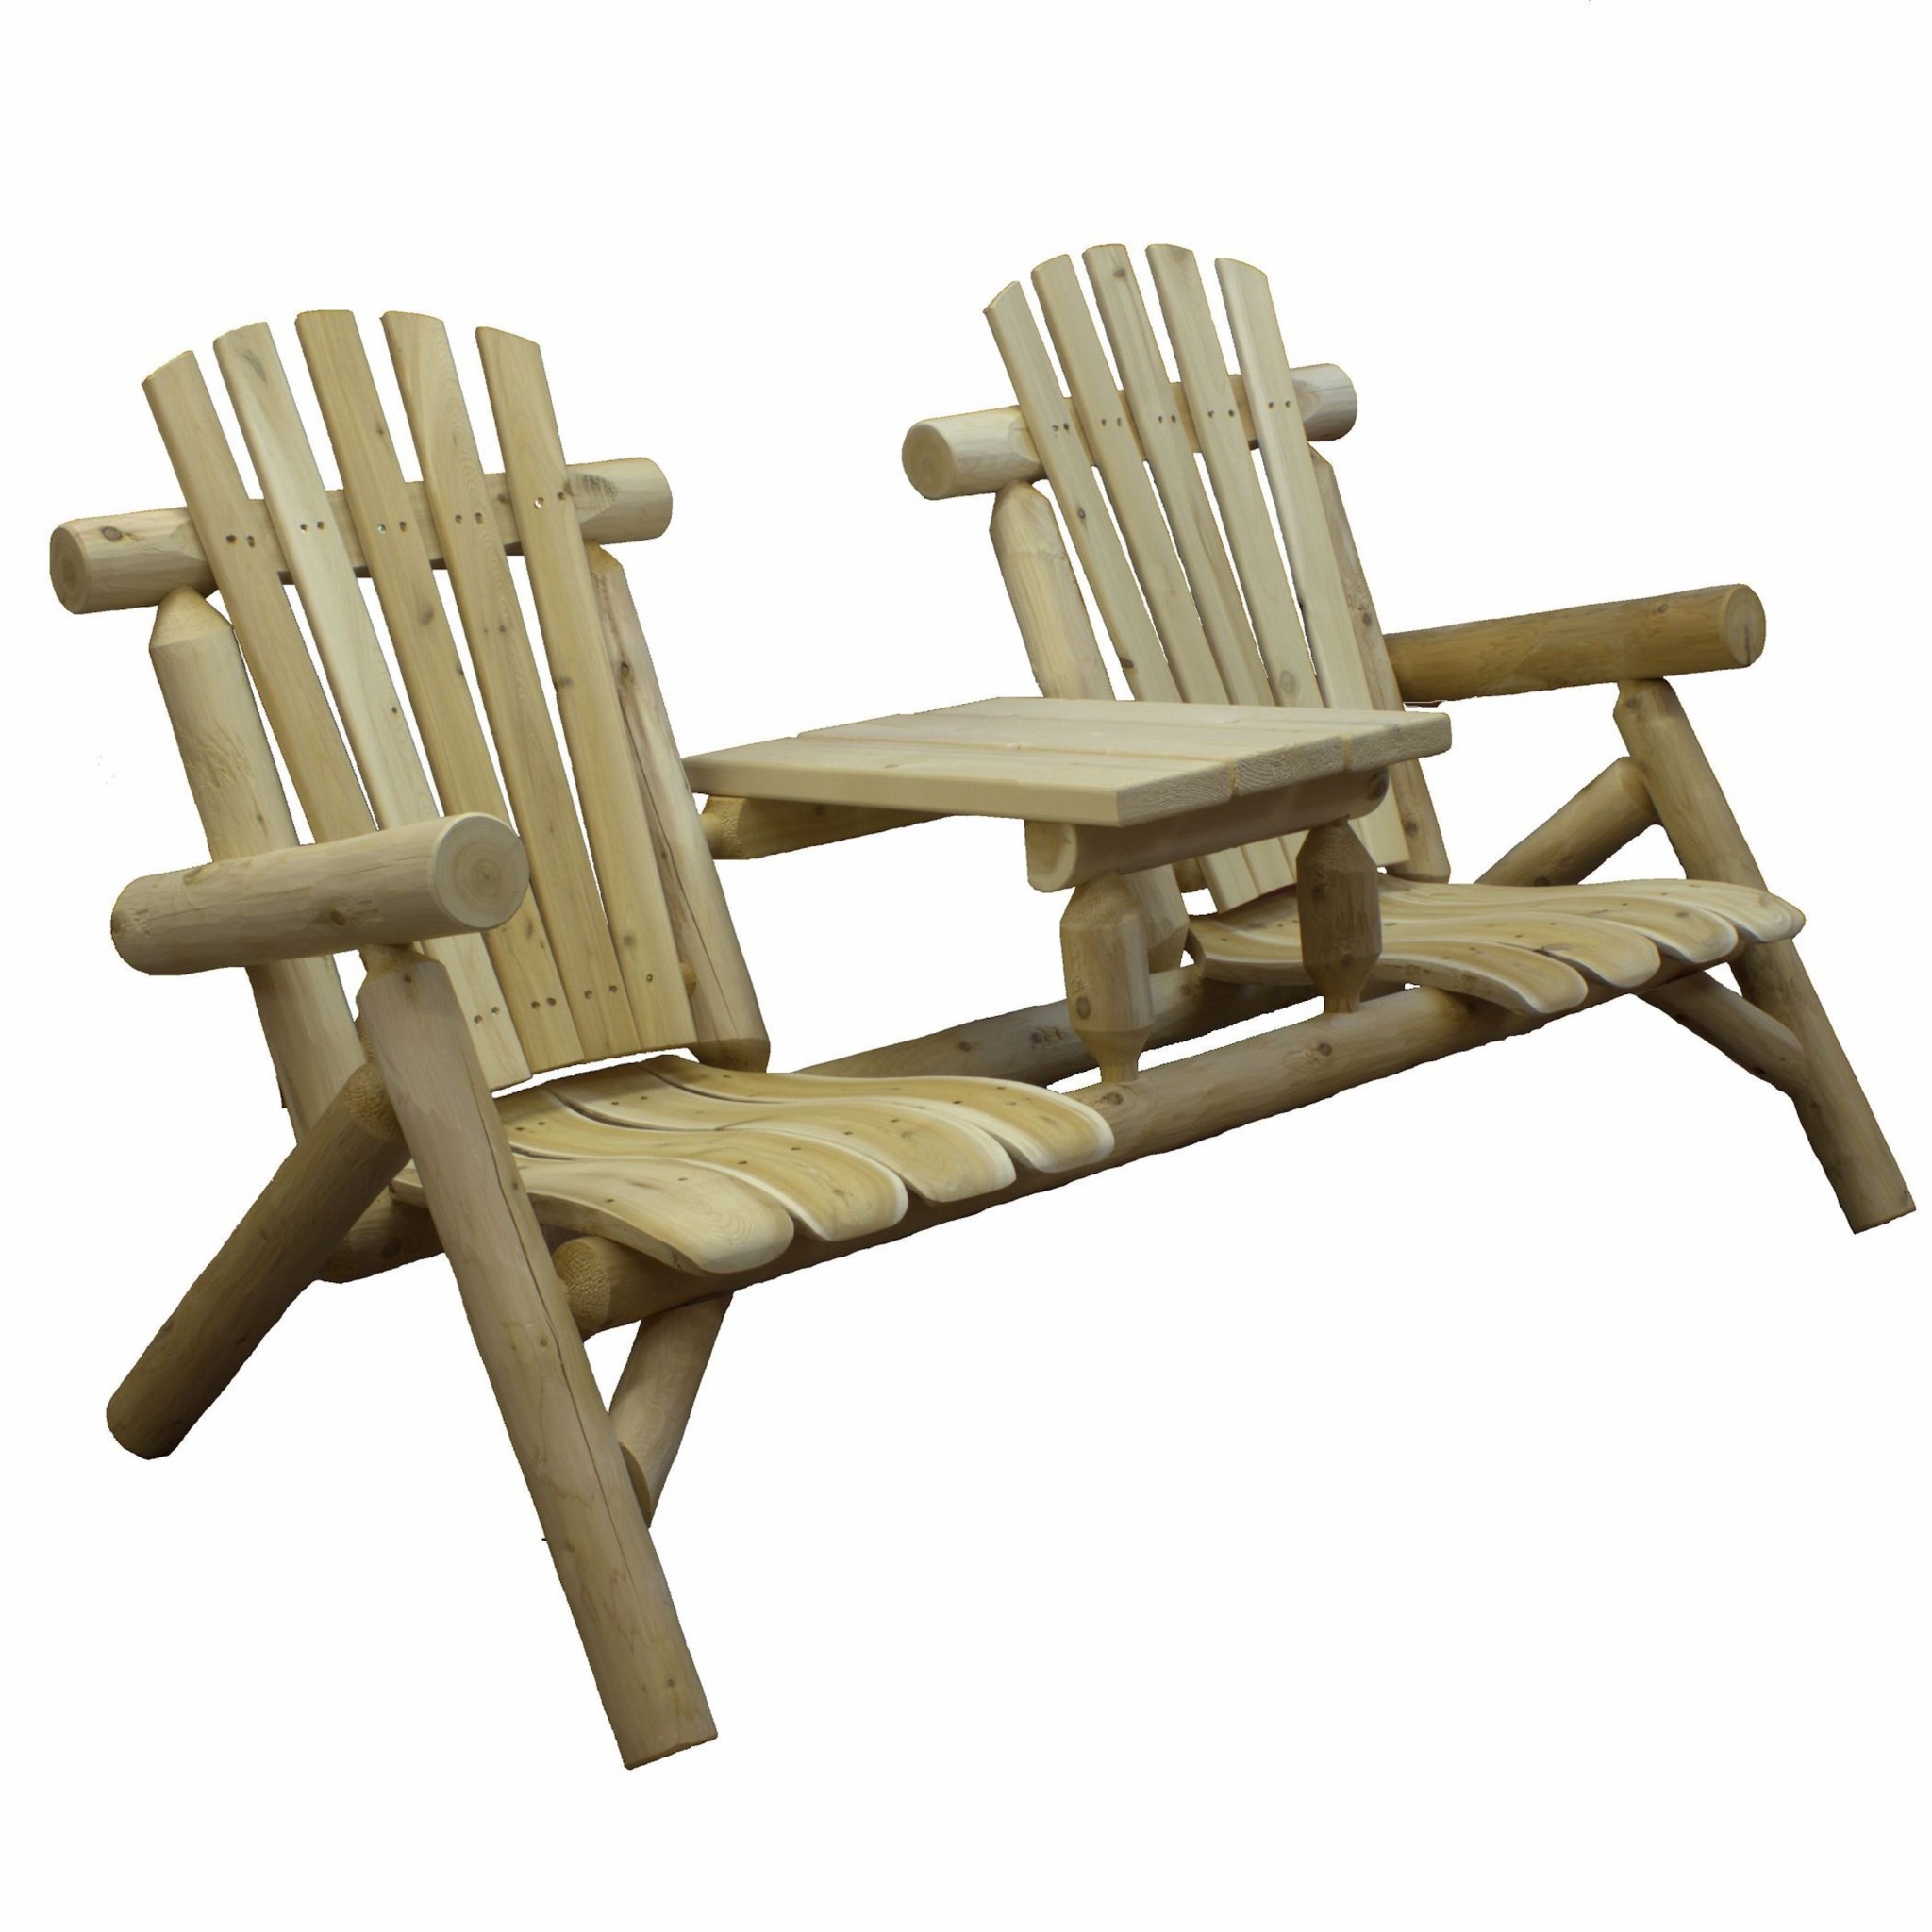 66" X 30" X 39" Natural Wood Tete-A-Tete Chair